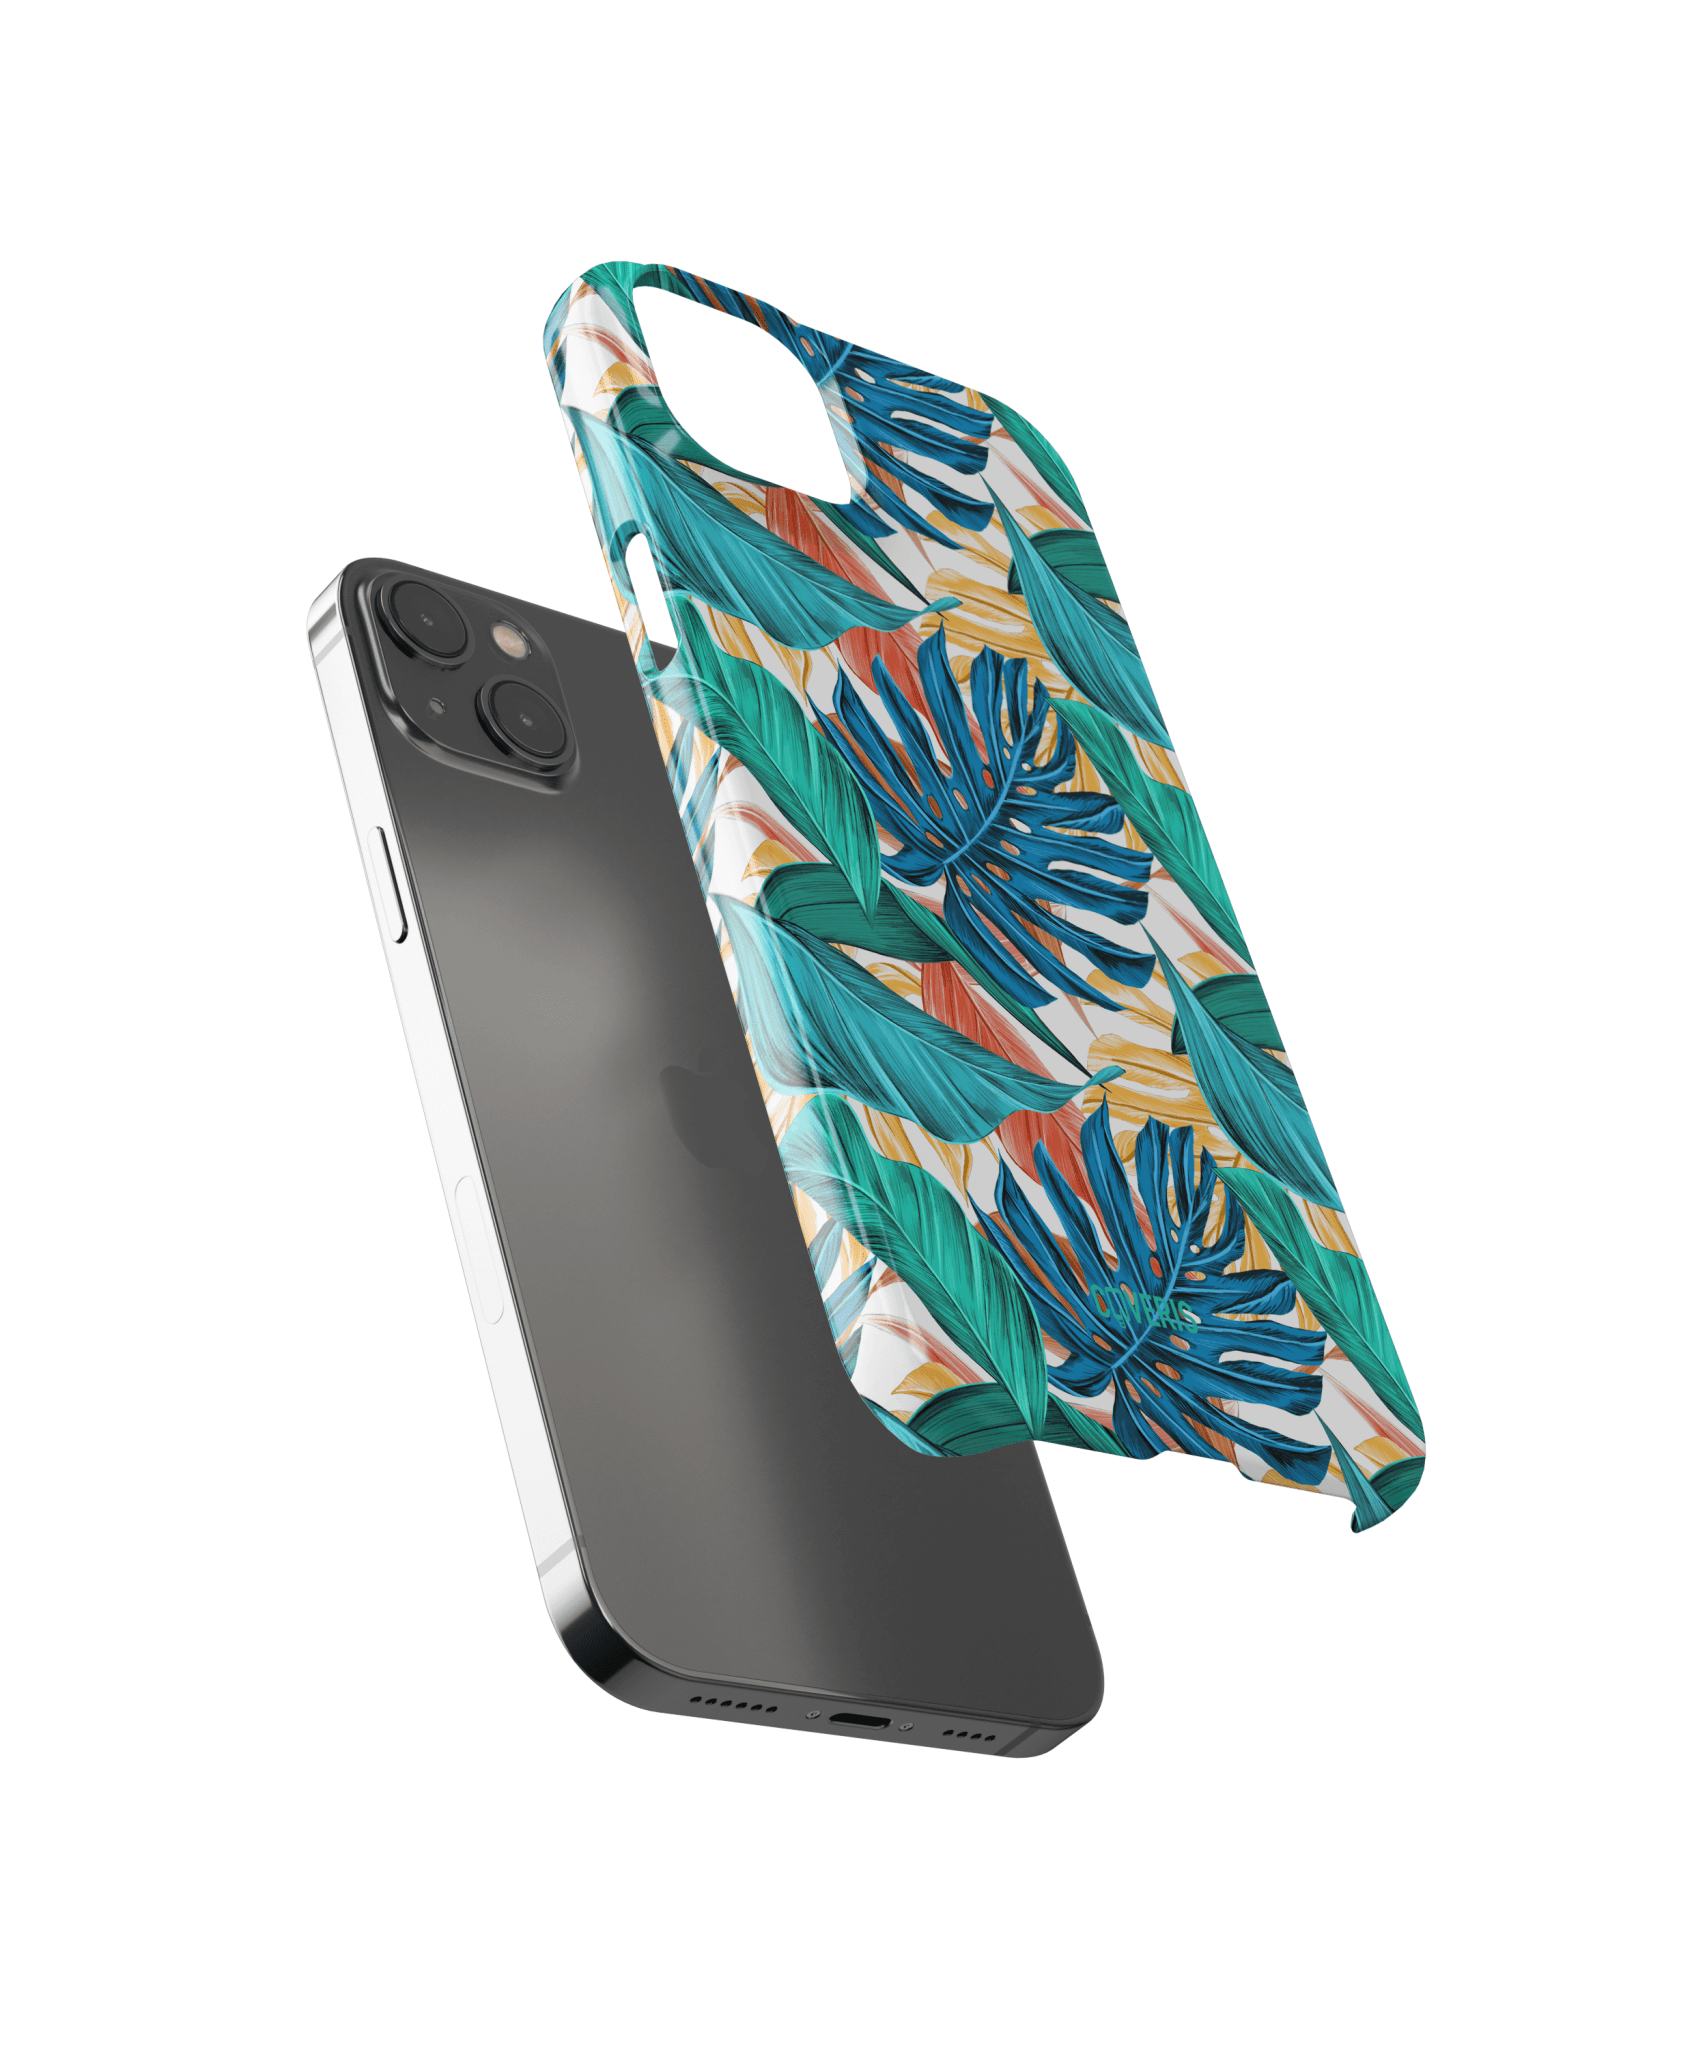 Aloha - iPhone 6 plus / 6s plus telefono dėklas - Coveris